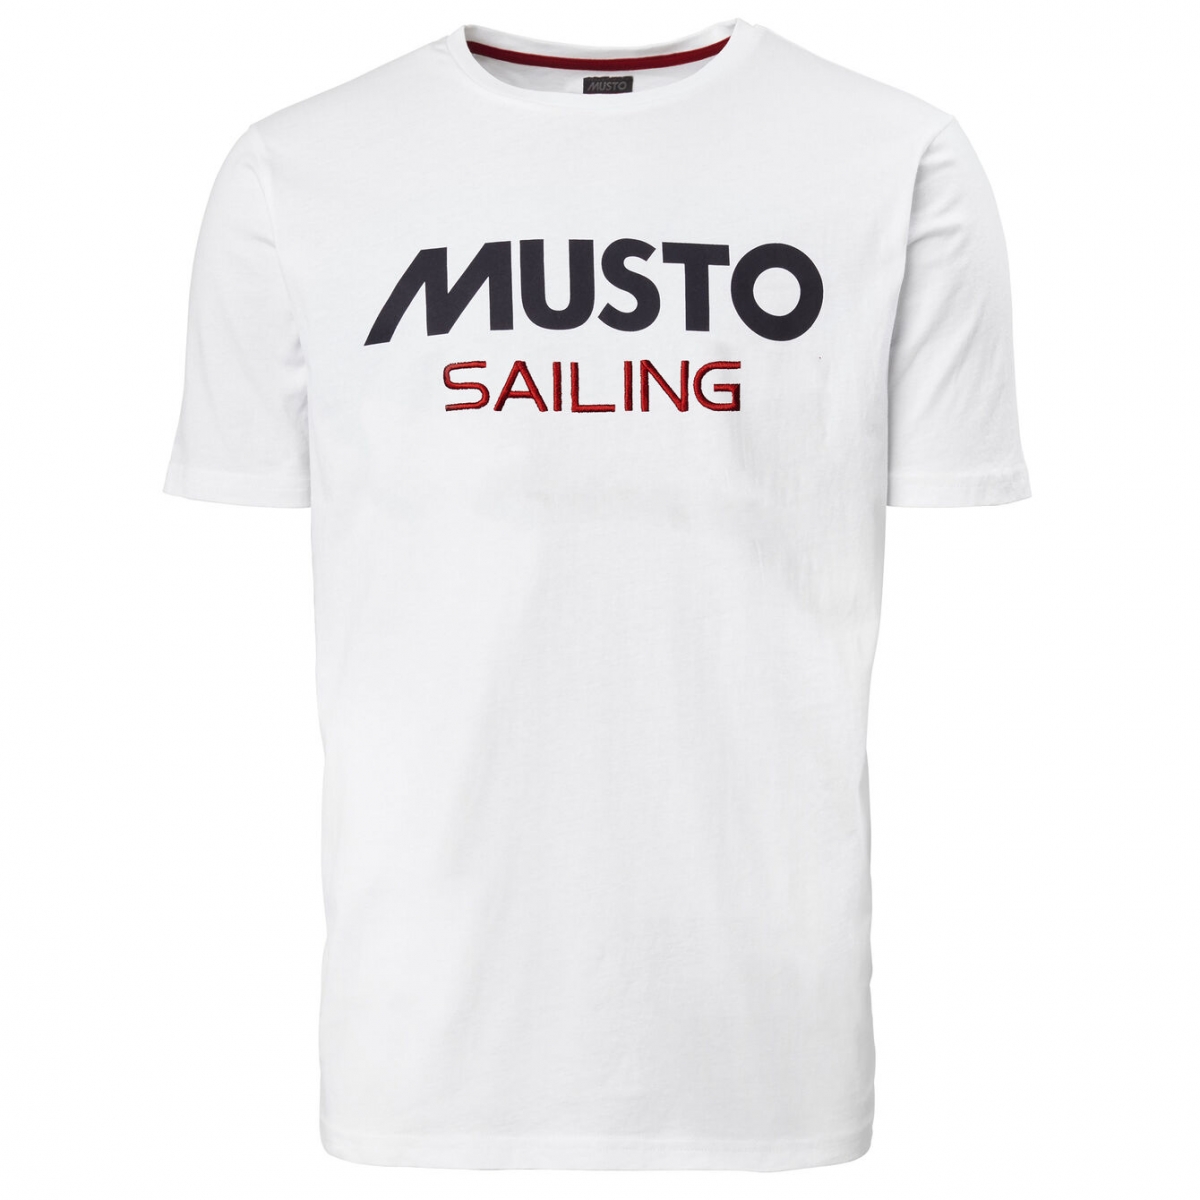 Musto - Sailing Musto tee | shirt